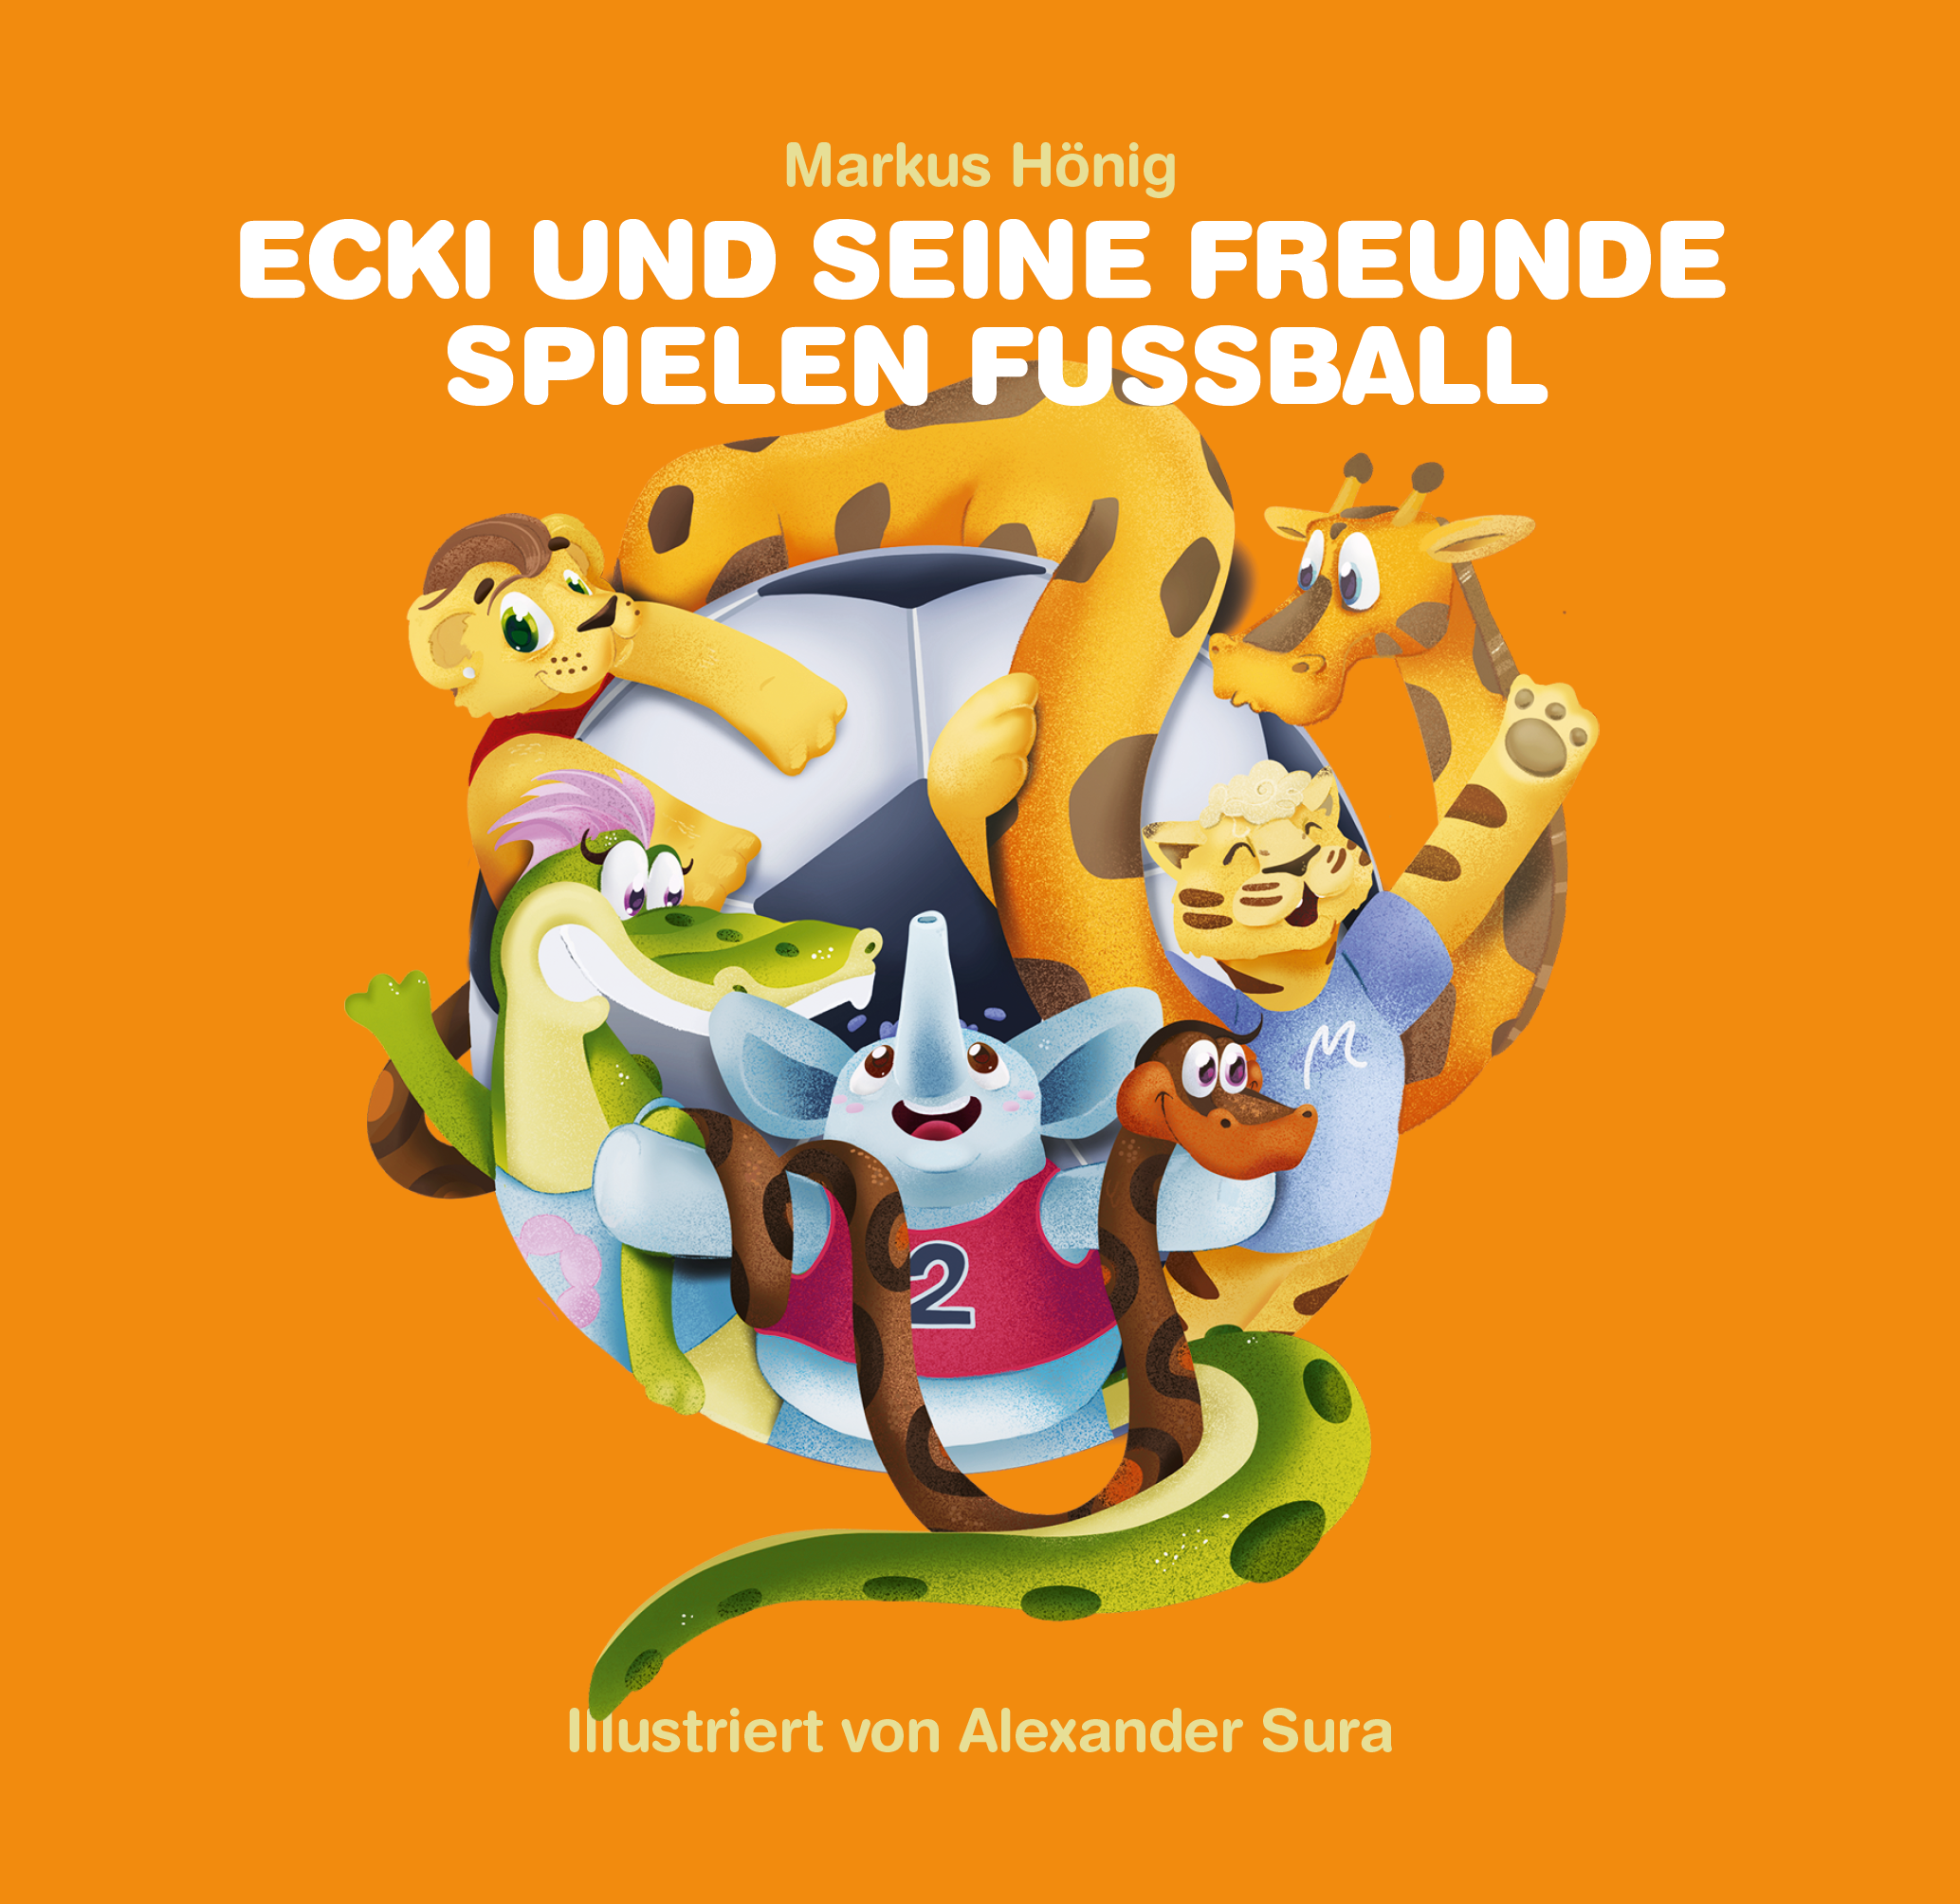 Ecki und seine Freunde spielen Fußball von Markus Hönig